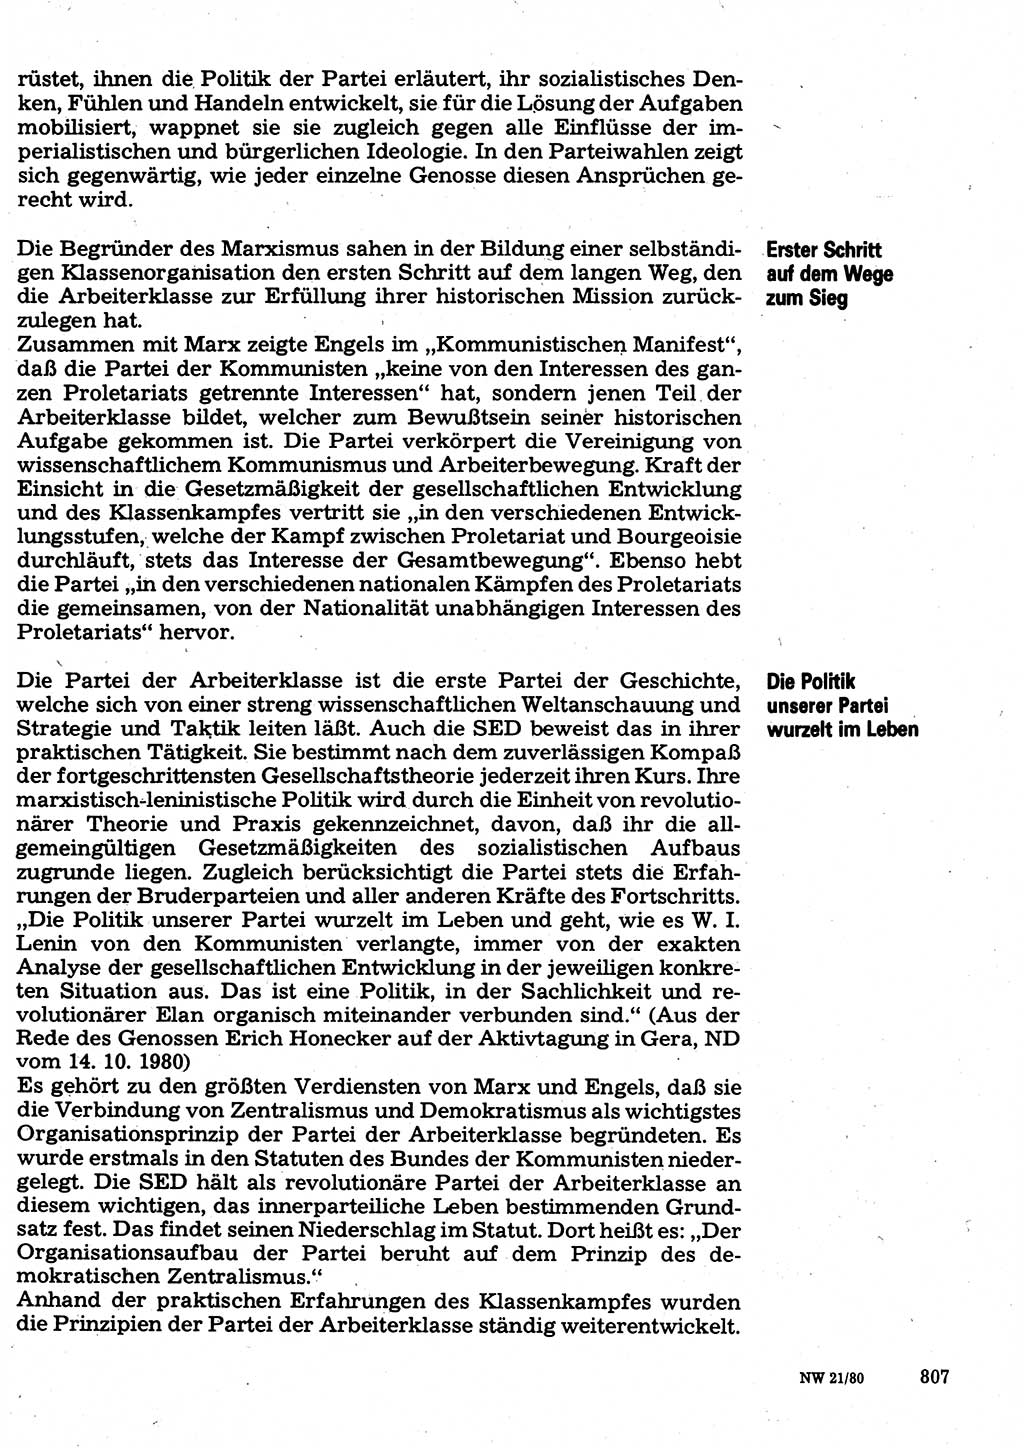 Neuer Weg (NW), Organ des Zentralkomitees (ZK) der SED (Sozialistische Einheitspartei Deutschlands) für Fragen des Parteilebens, 35. Jahrgang [Deutsche Demokratische Republik (DDR)] 1980, Seite 807 (NW ZK SED DDR 1980, S. 807)